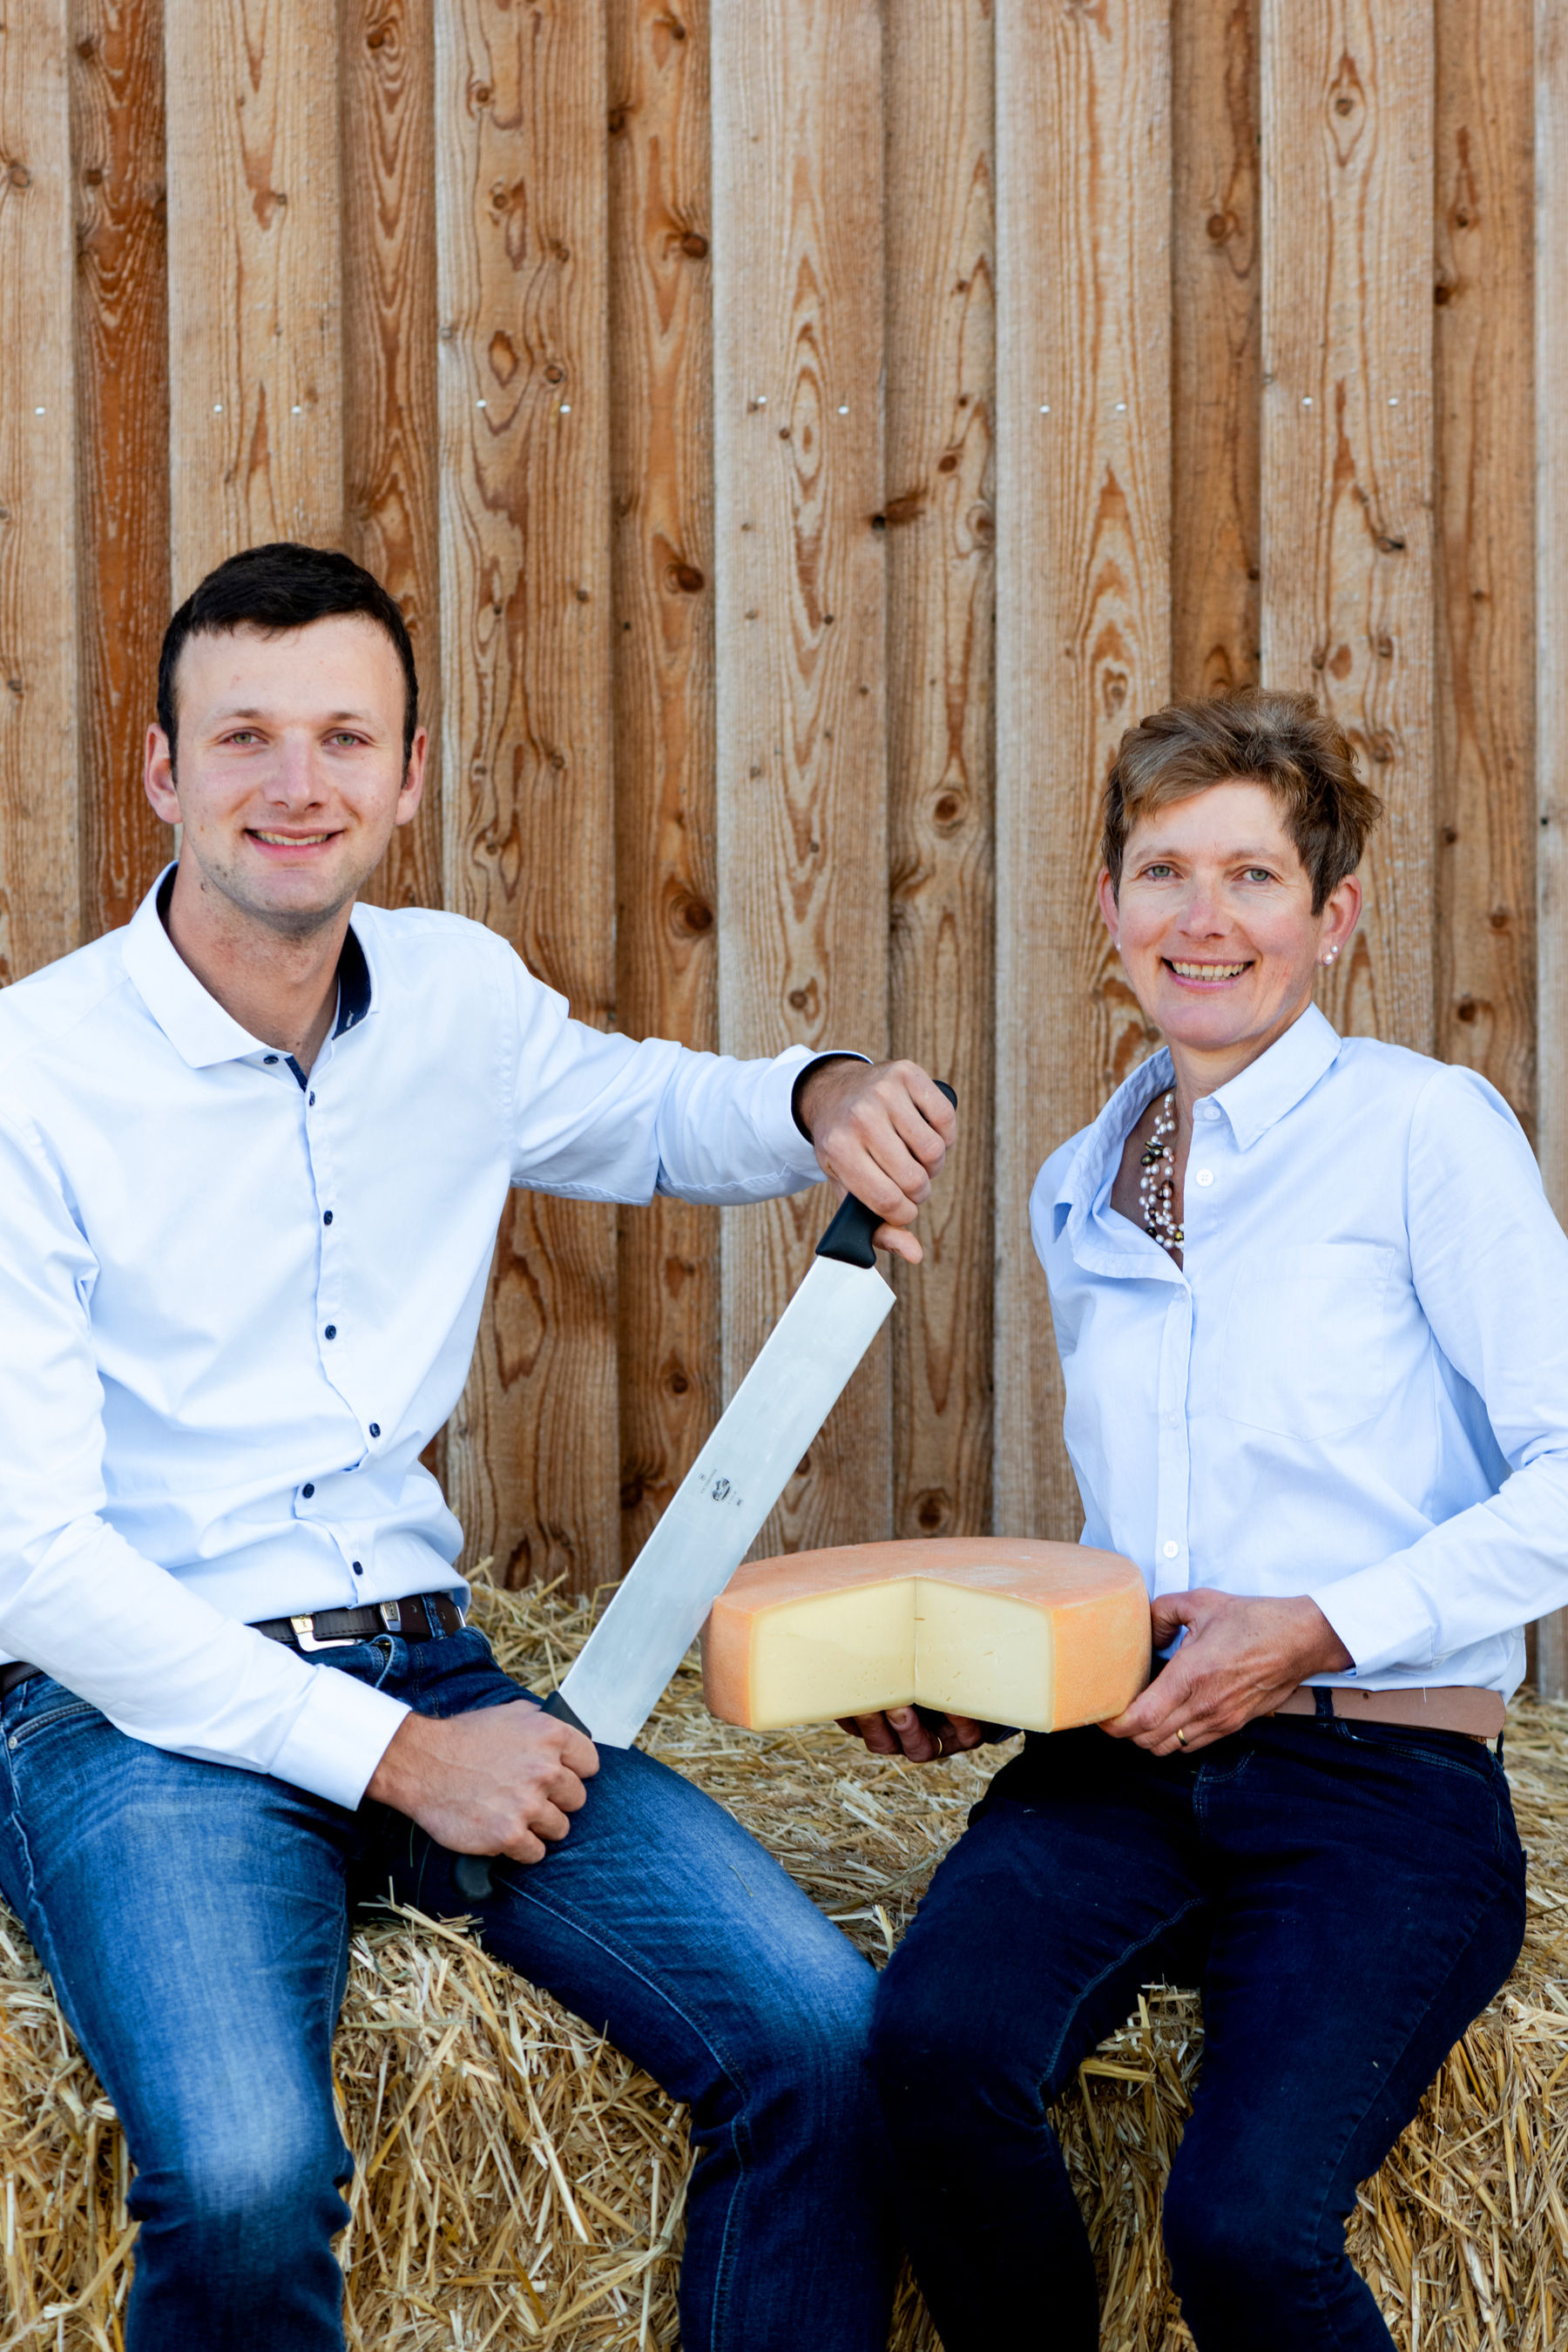 Bäuerliche Unternehmerin 2011 Regina Grabmayr Interview NWK Unsere Milch Martina Siebenhandl b.jpg